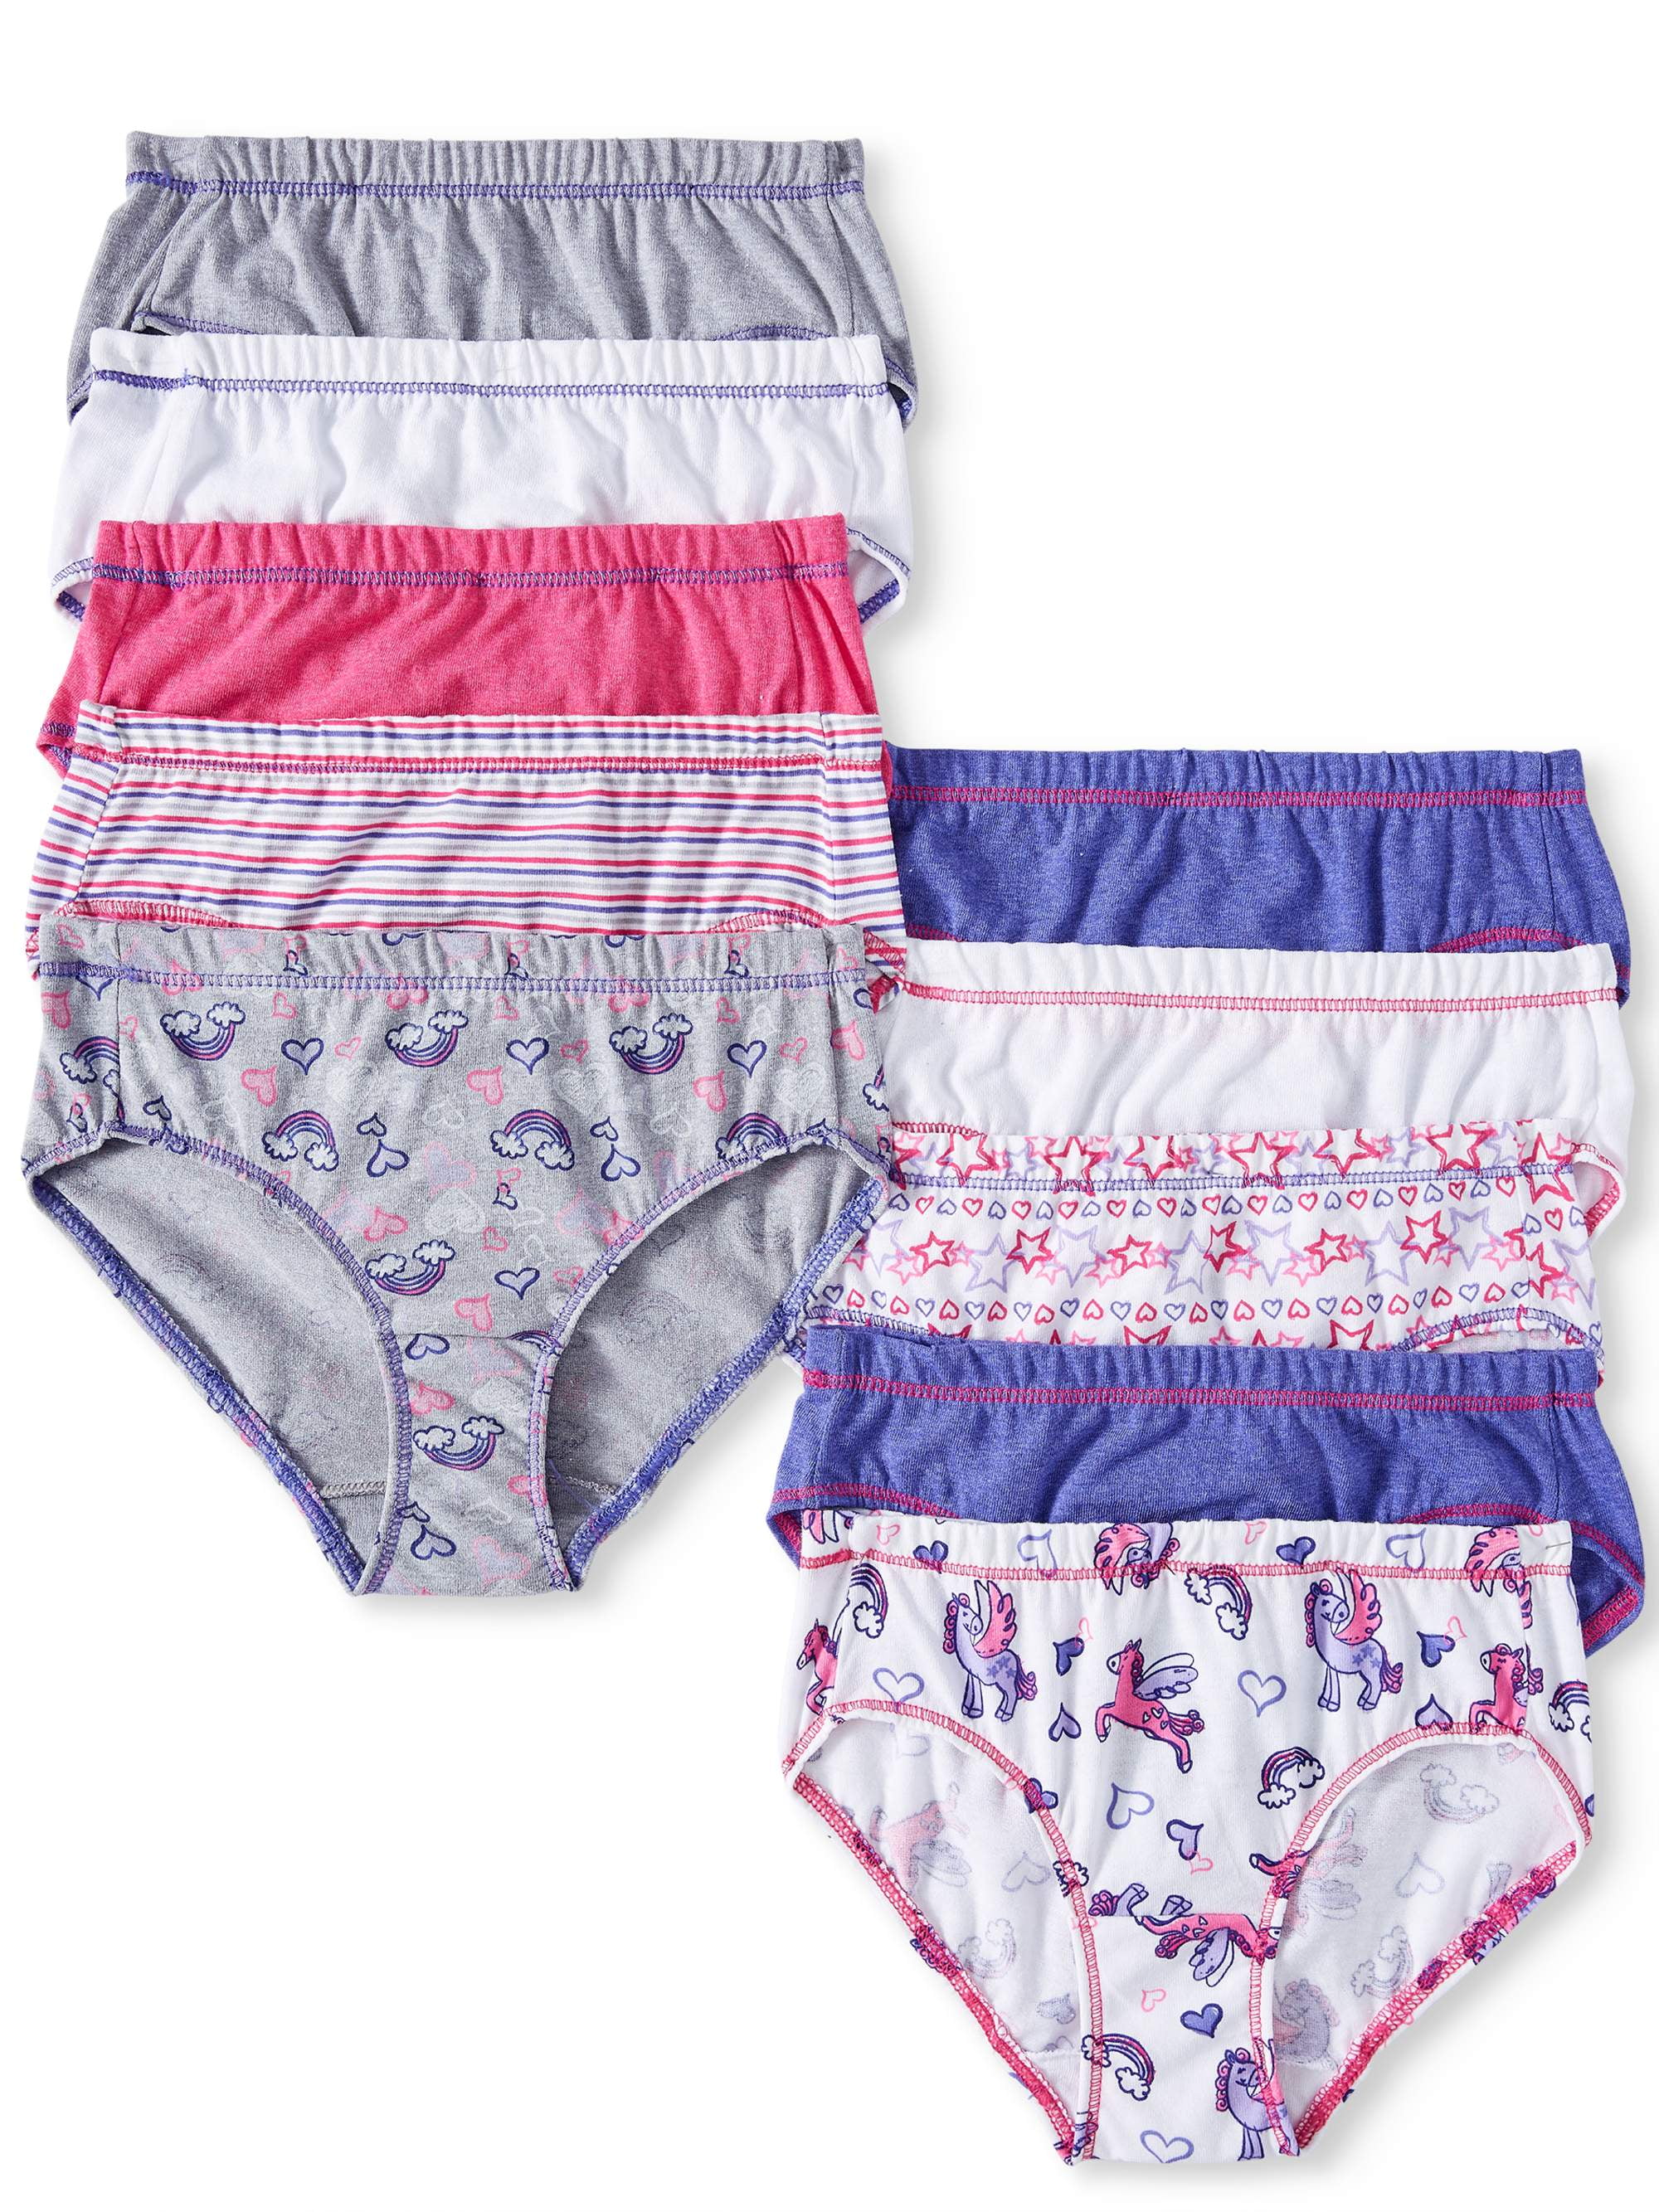 10pk Hanes Toddler Girls EcoSmart Hipsters Tagless Underwear 